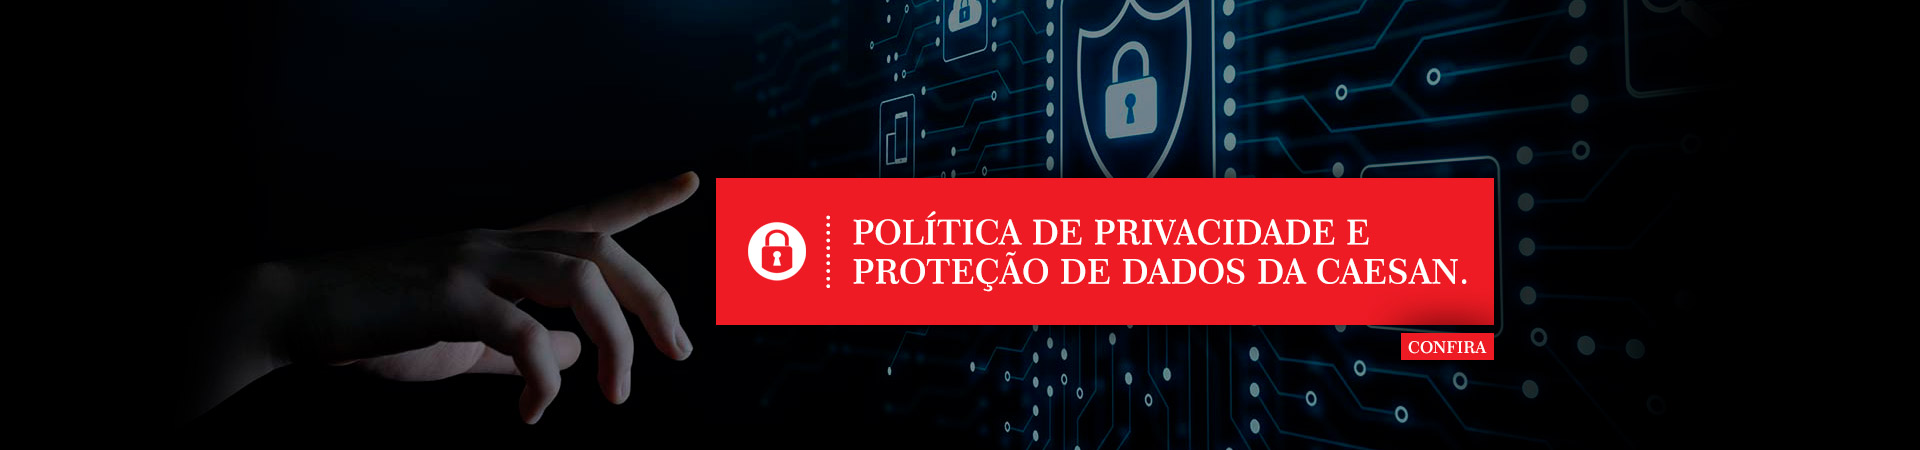 Política de Privacidade e Proteção de Dados da CAESAN